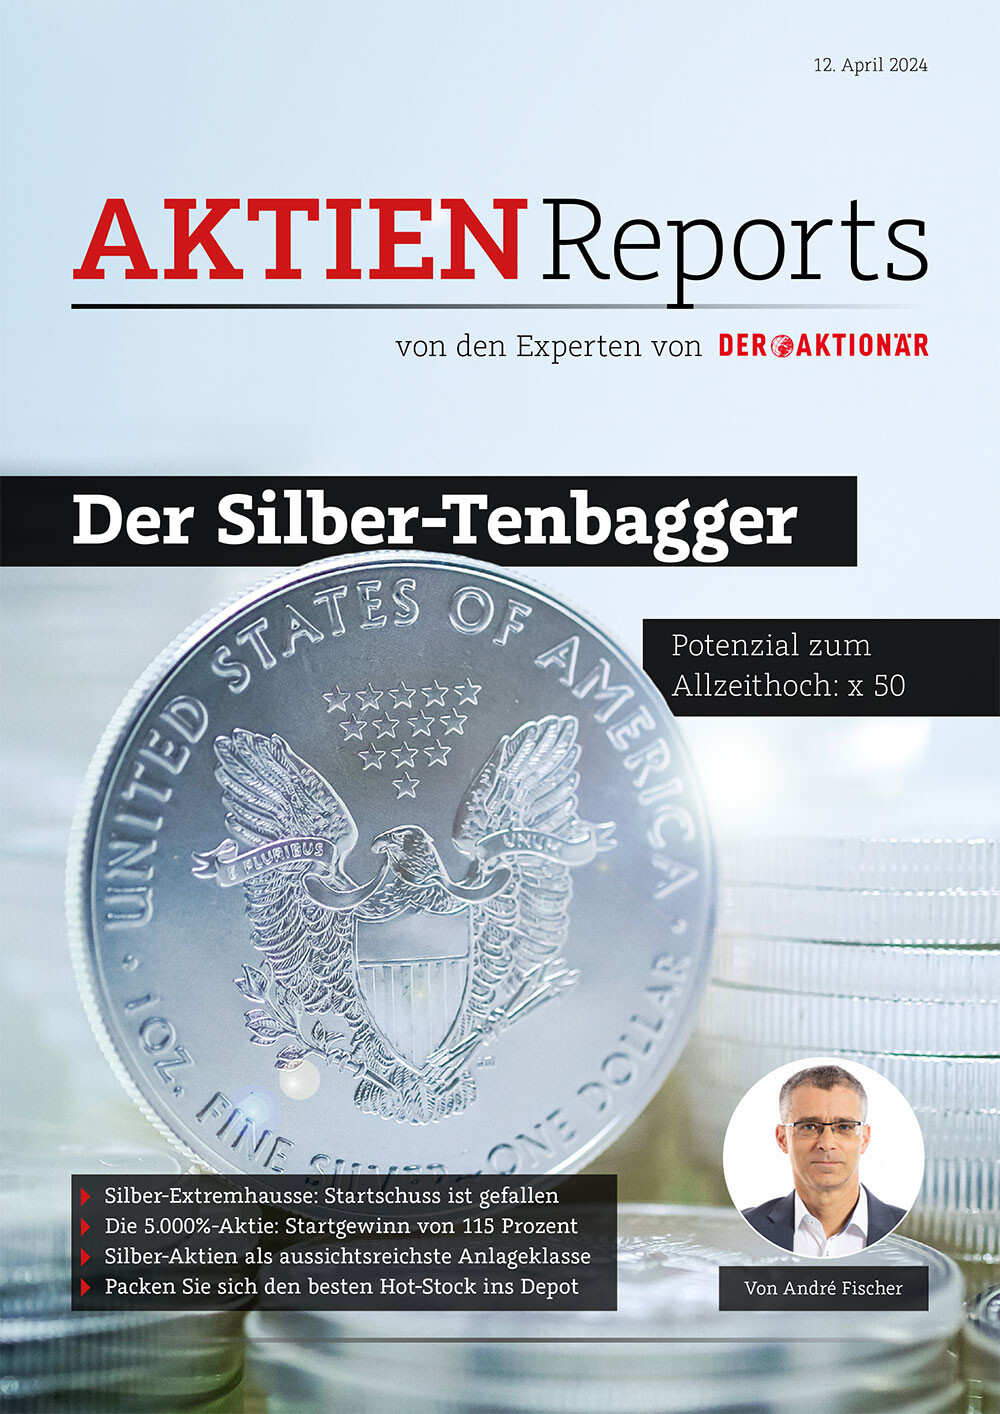 Silber, Aktienreport, Tenbagger